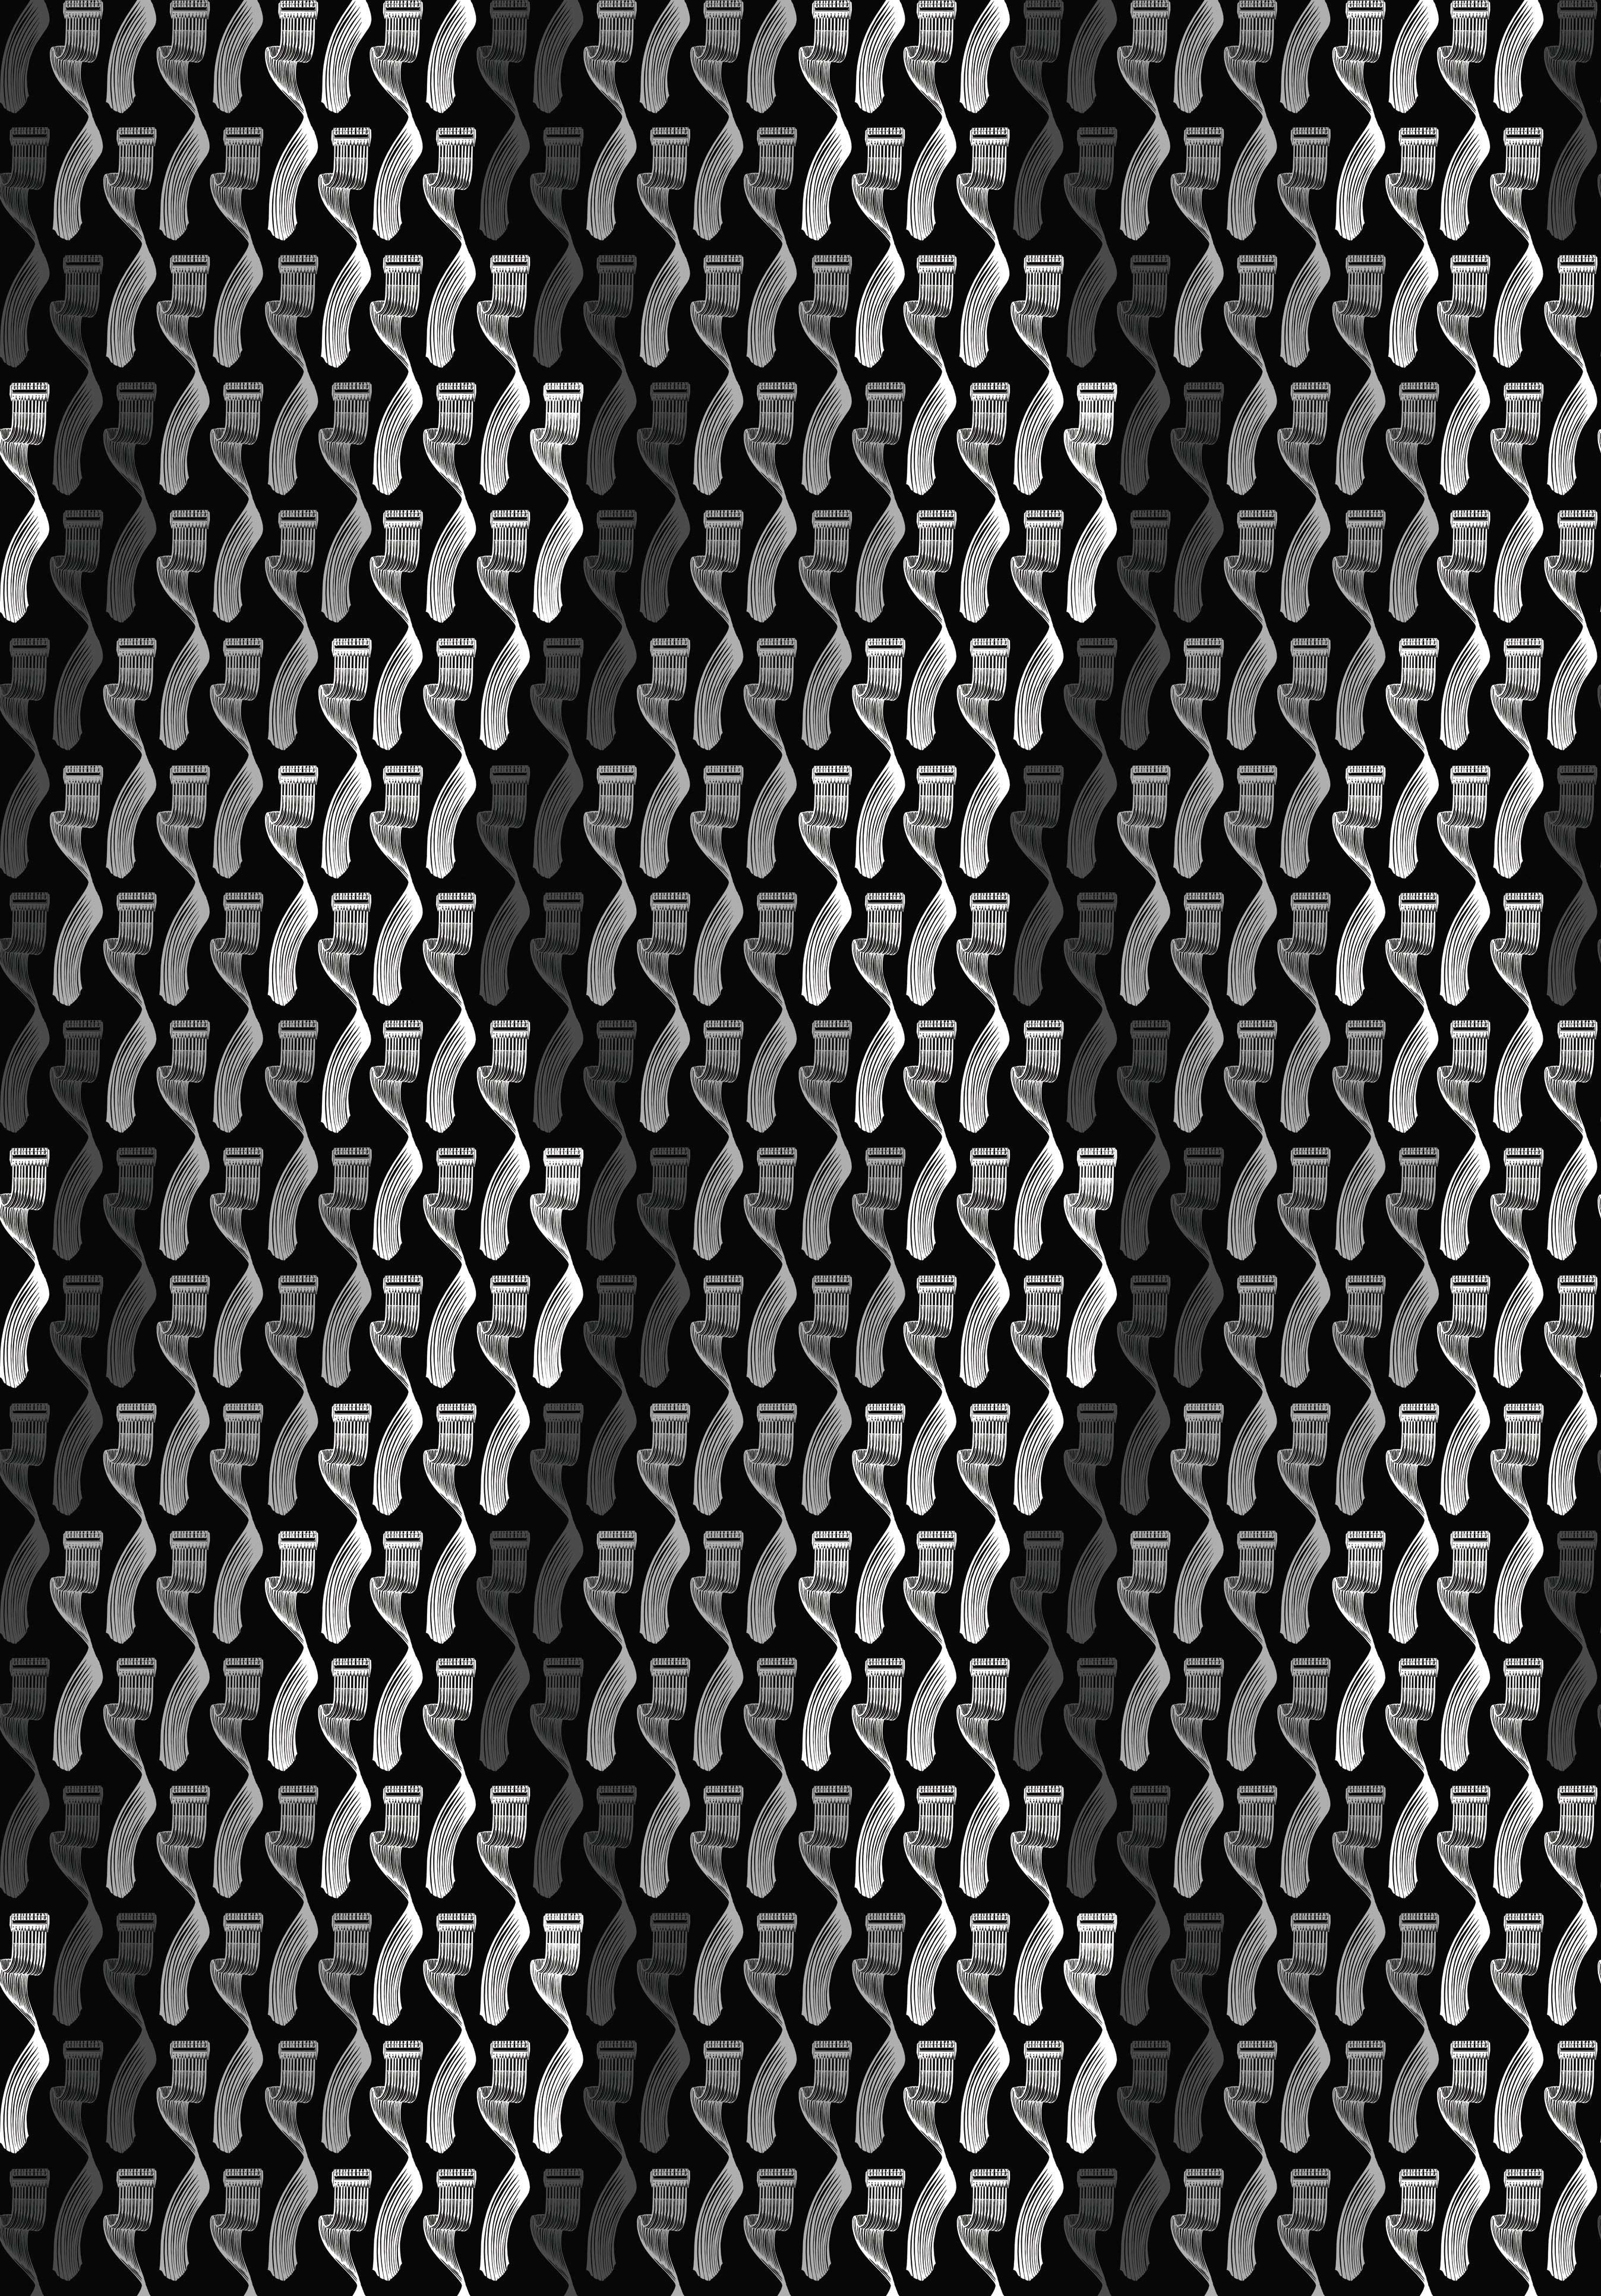 [48+] Black Geometric Wallpaper | WallpaperSafari.com